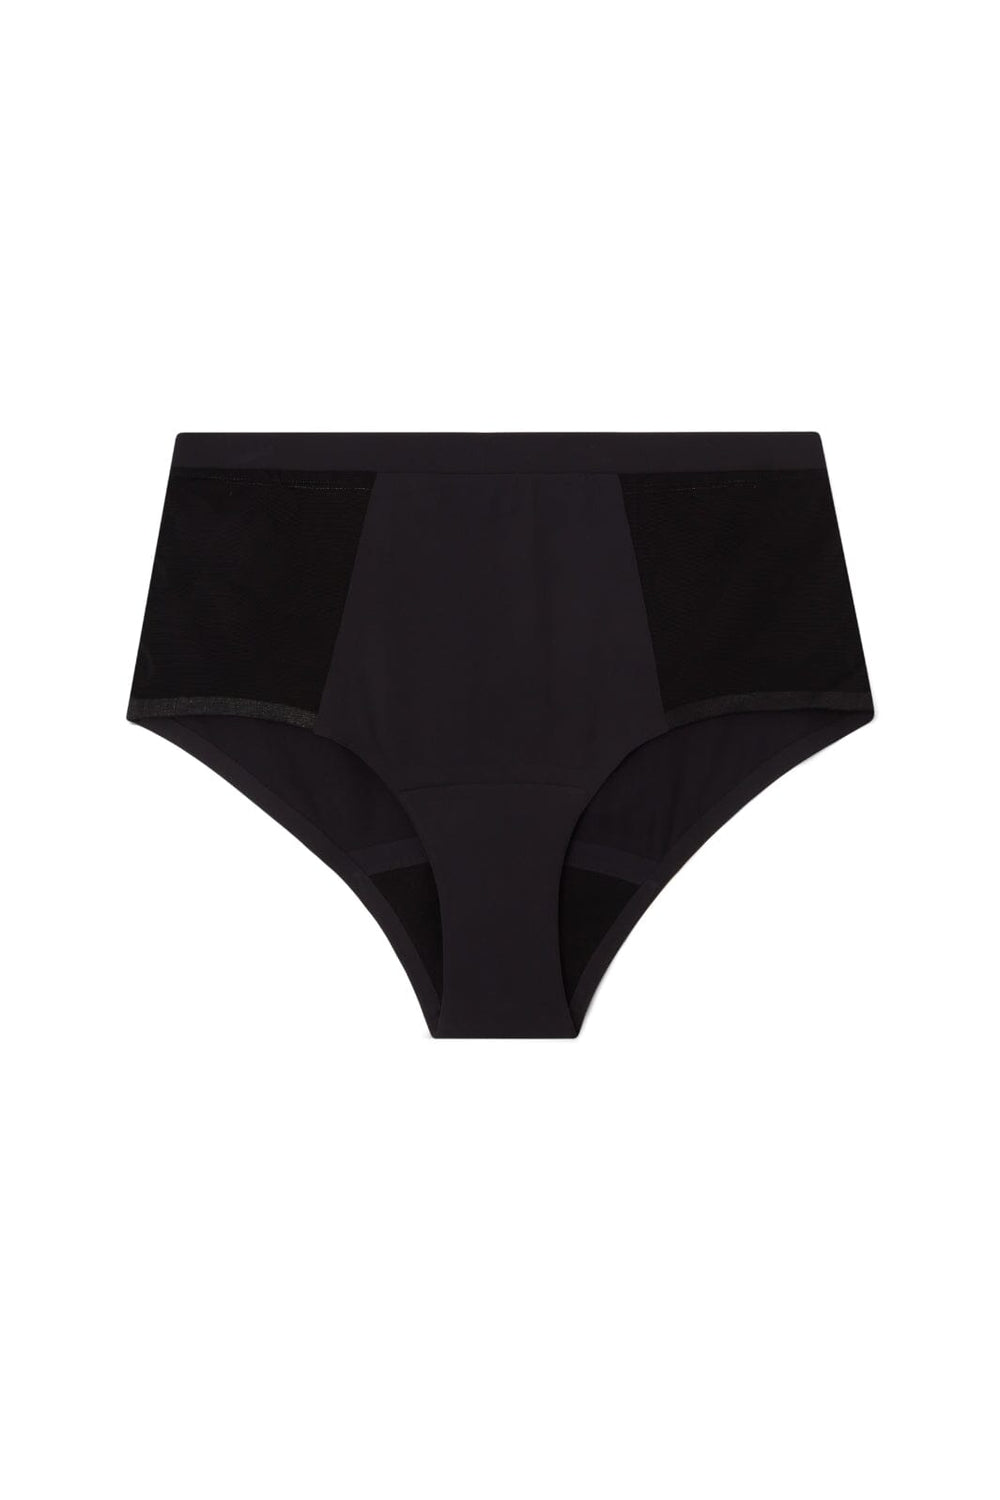 Understatement Underwear - Microfiber Period Highwaist Briefs - Black Underbukser 